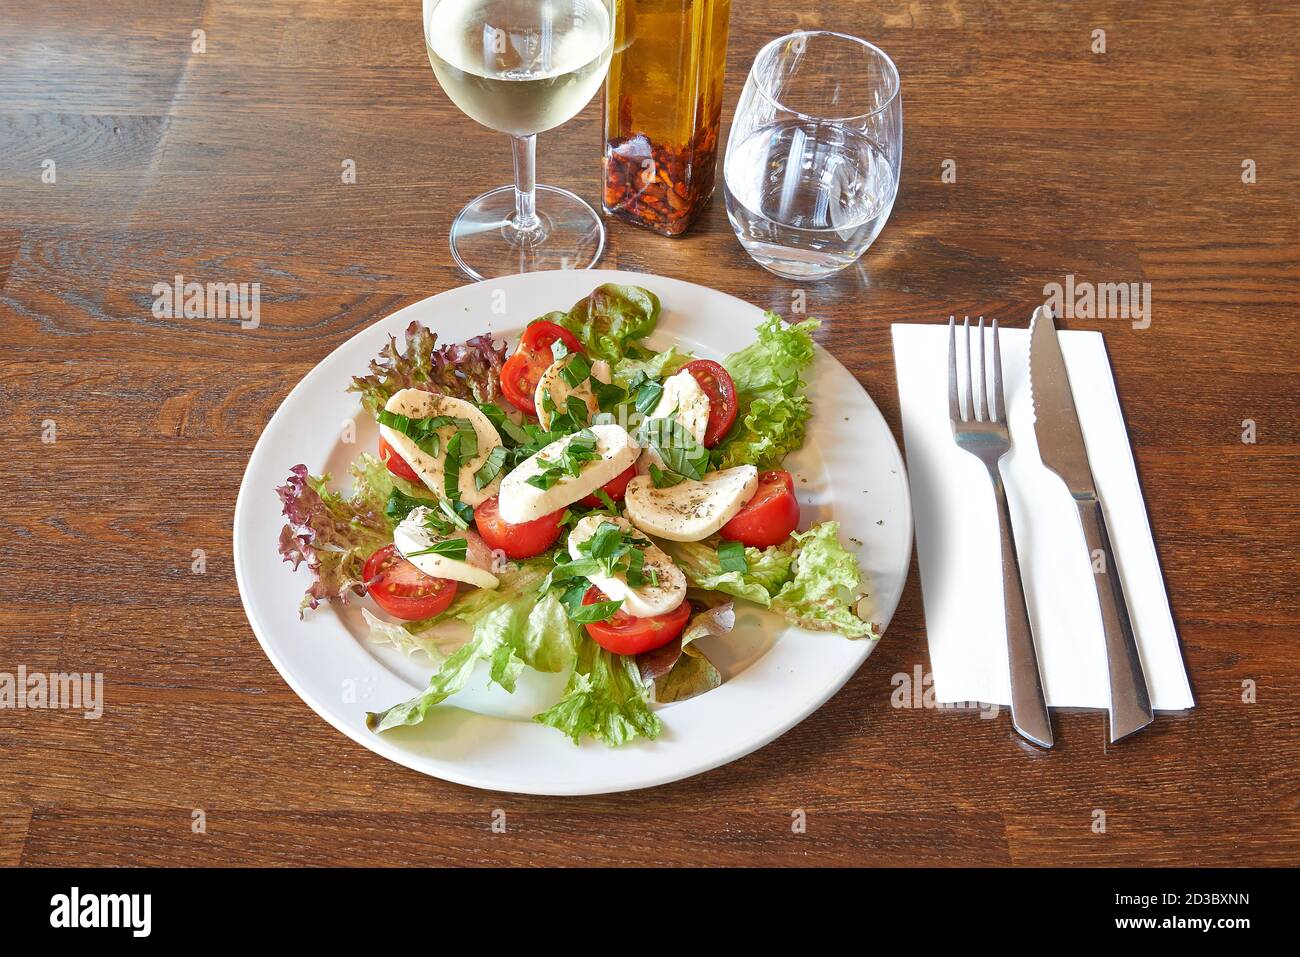 Besteck auf braunem Holztisch und weißer Teller mit Tomaten und Mozzarella auf Salat. Stockfoto